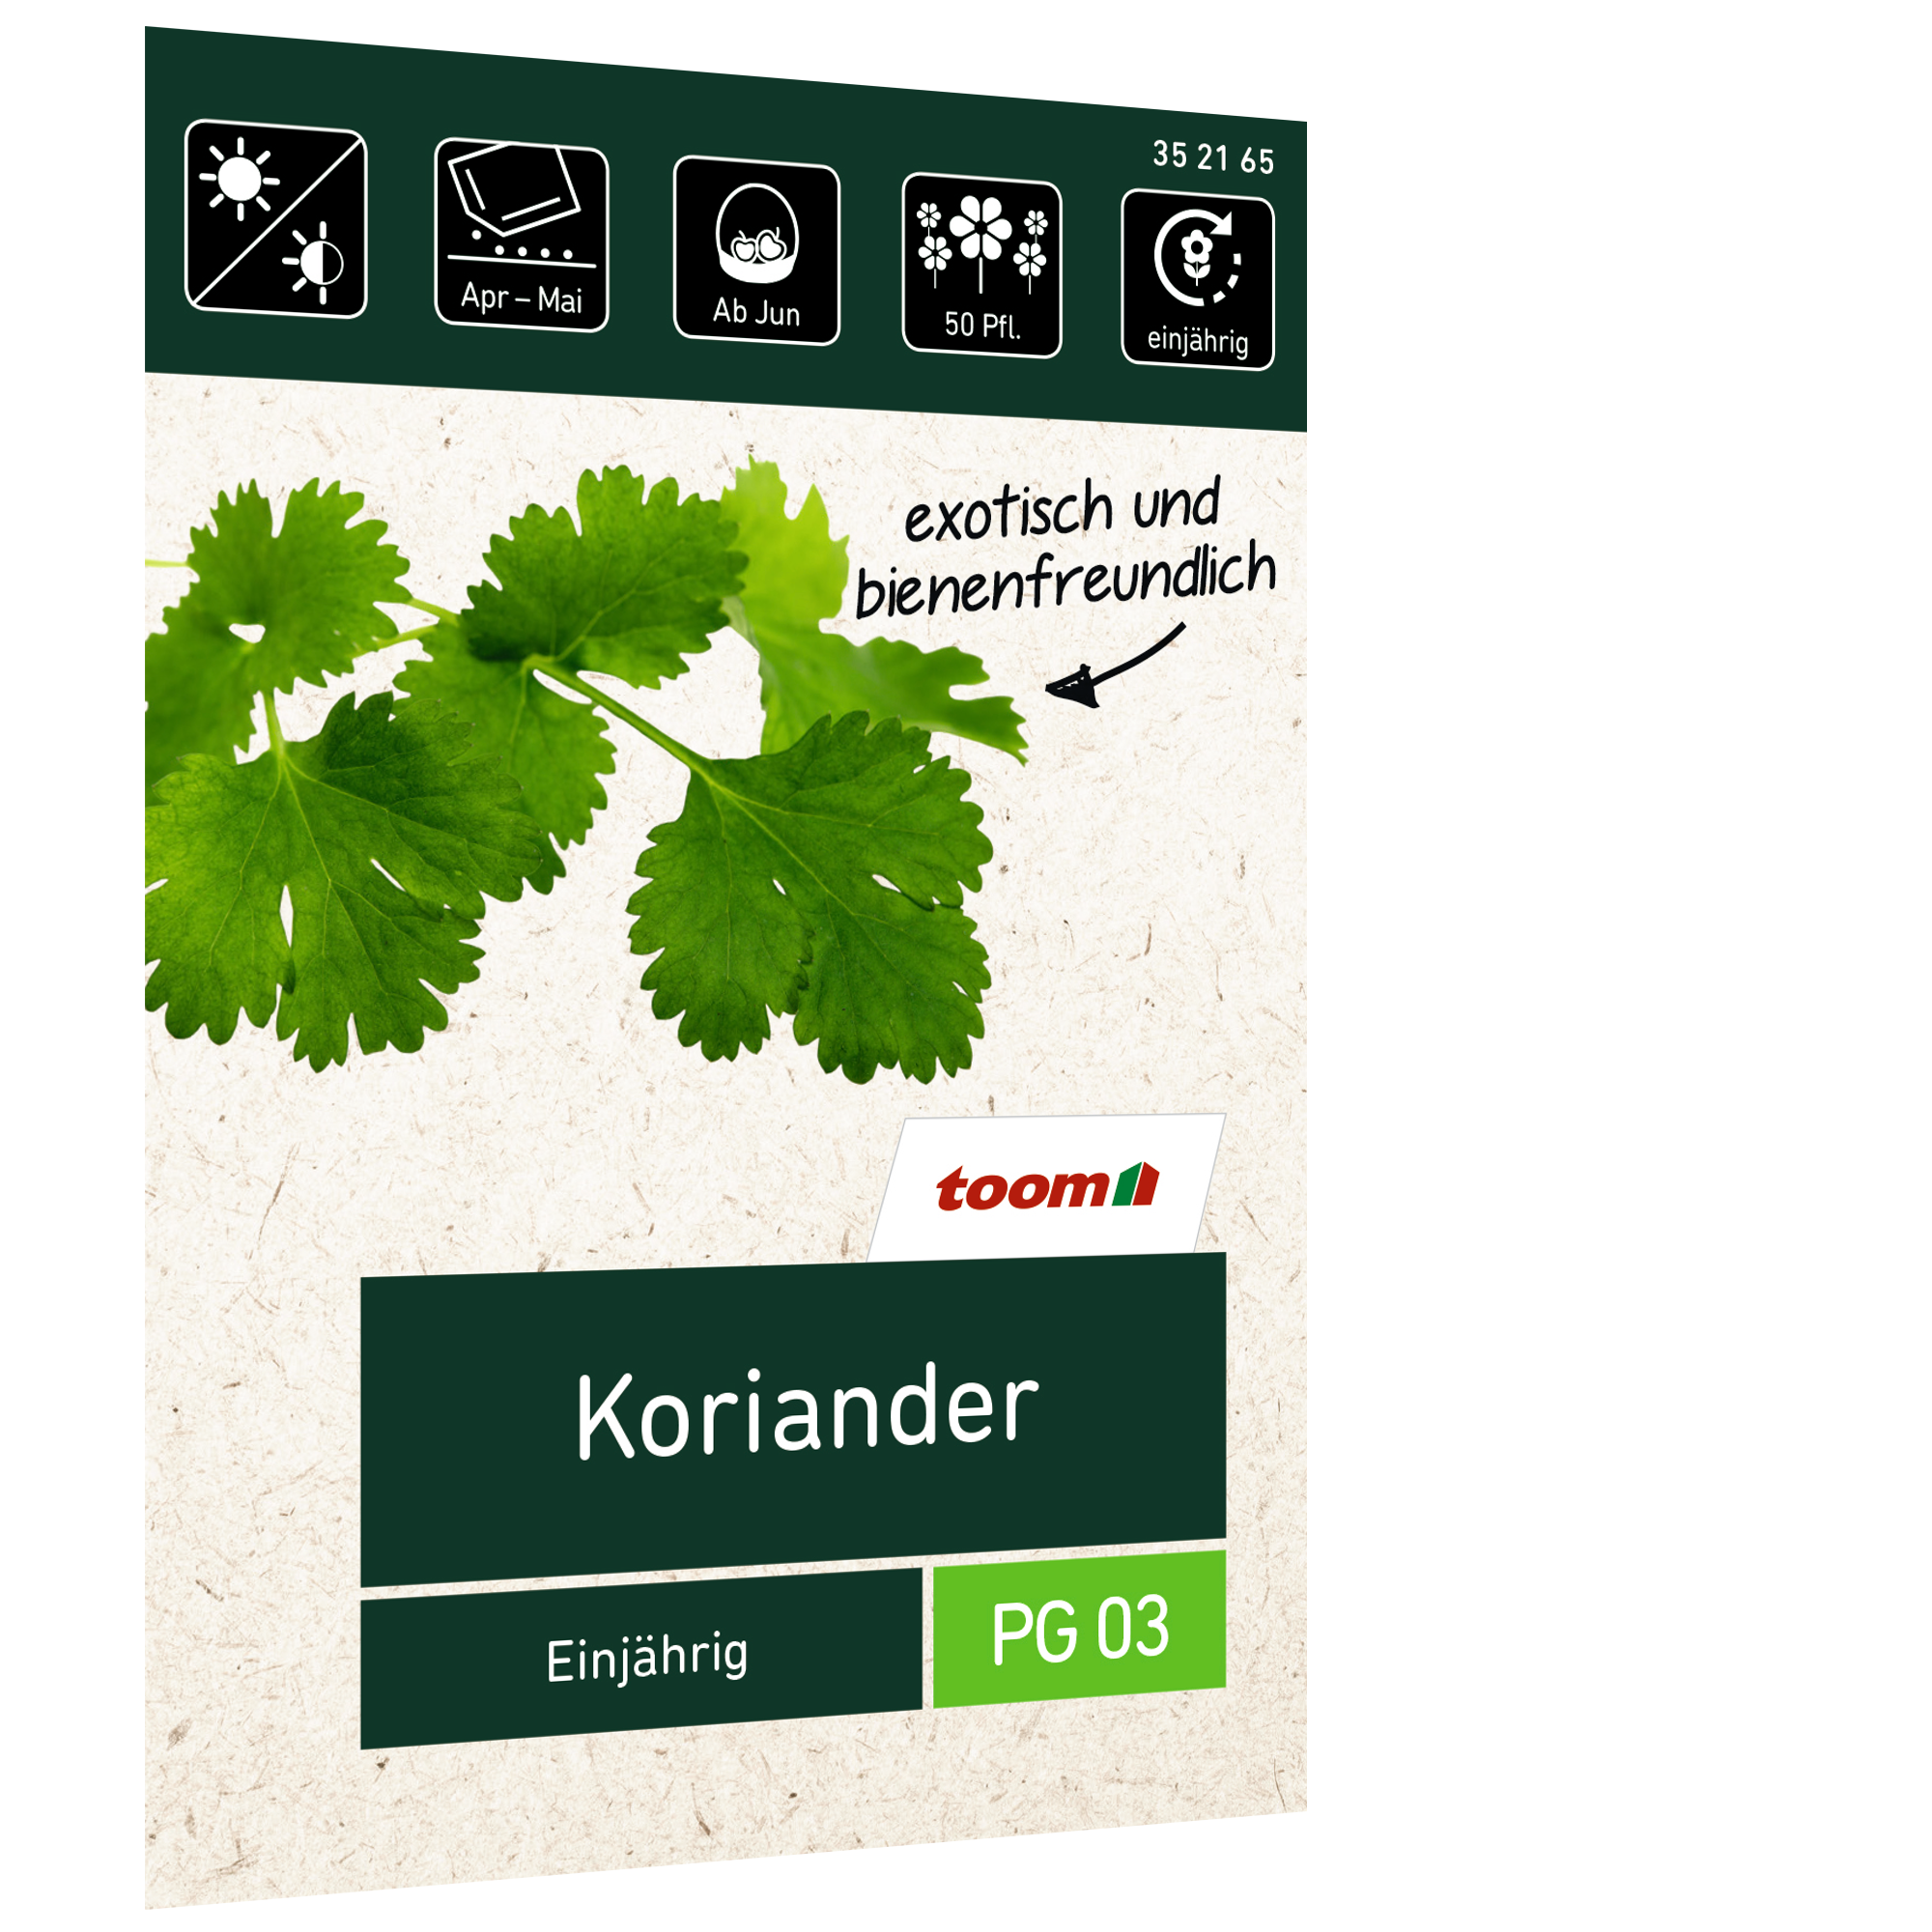 Koriander 'Einjährig' + product picture